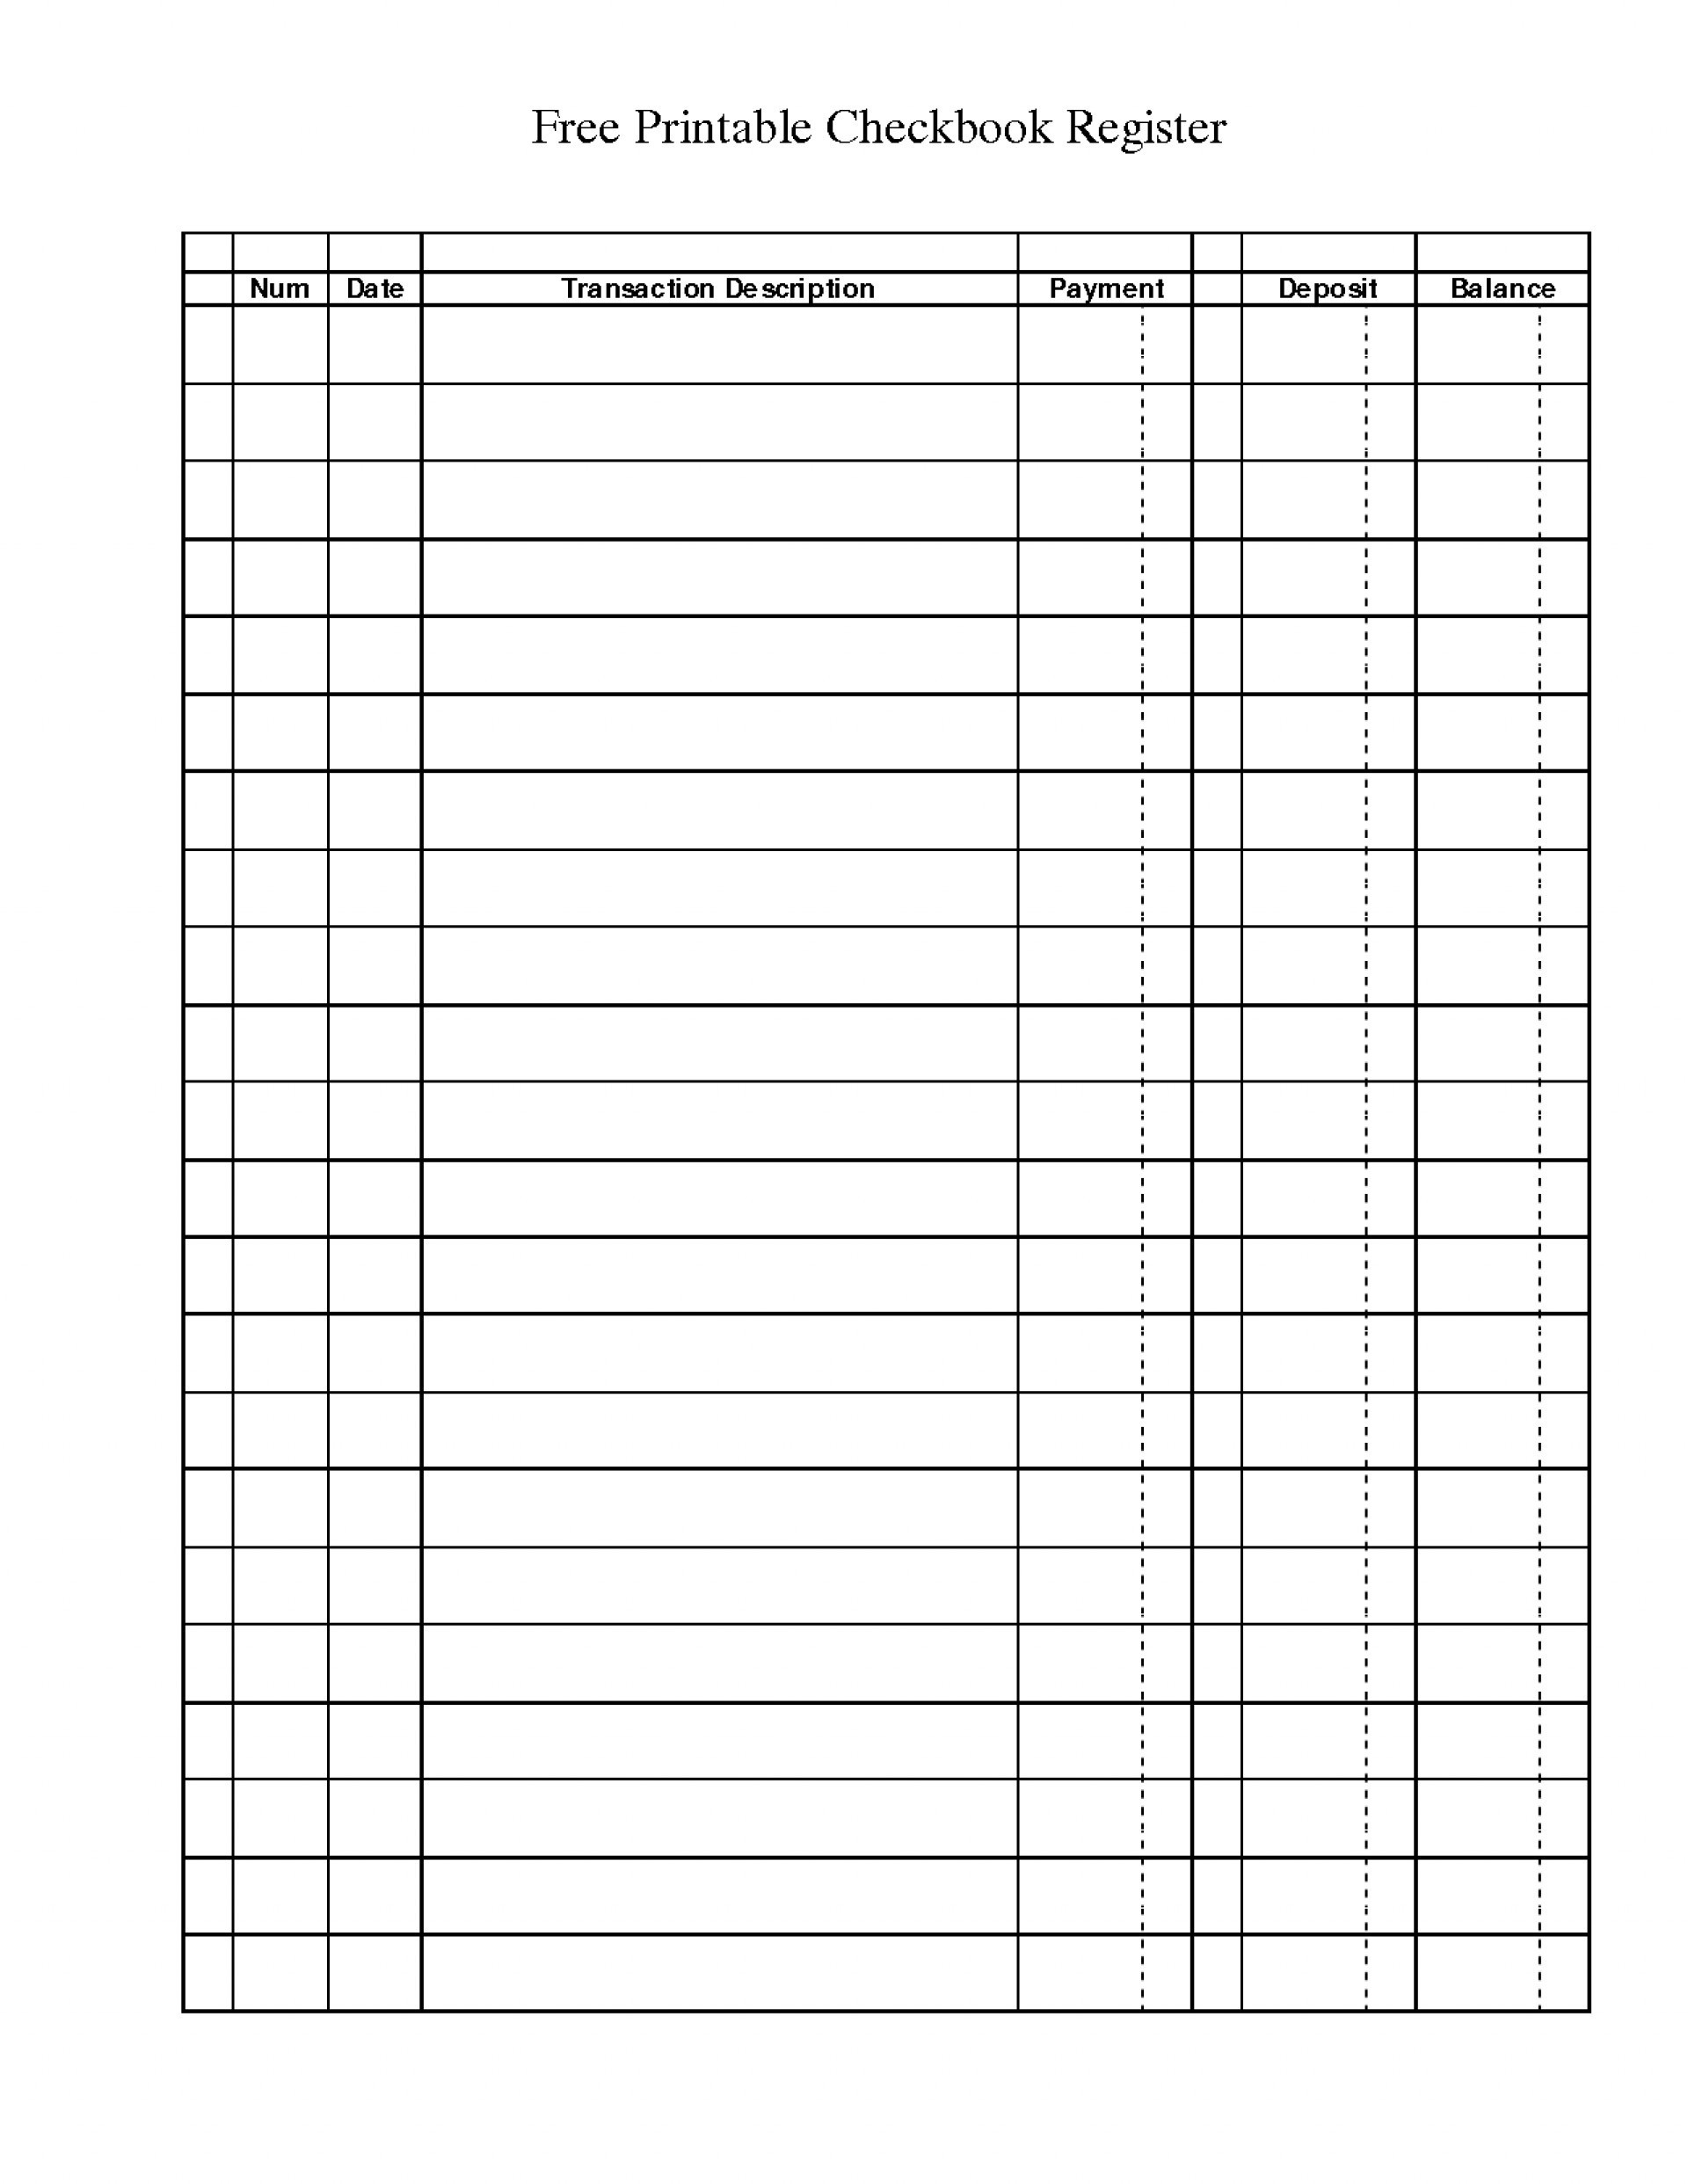 Excel Checkbook Register Budget Worksheet Free Printable Checkbook Register Download Mult Igry